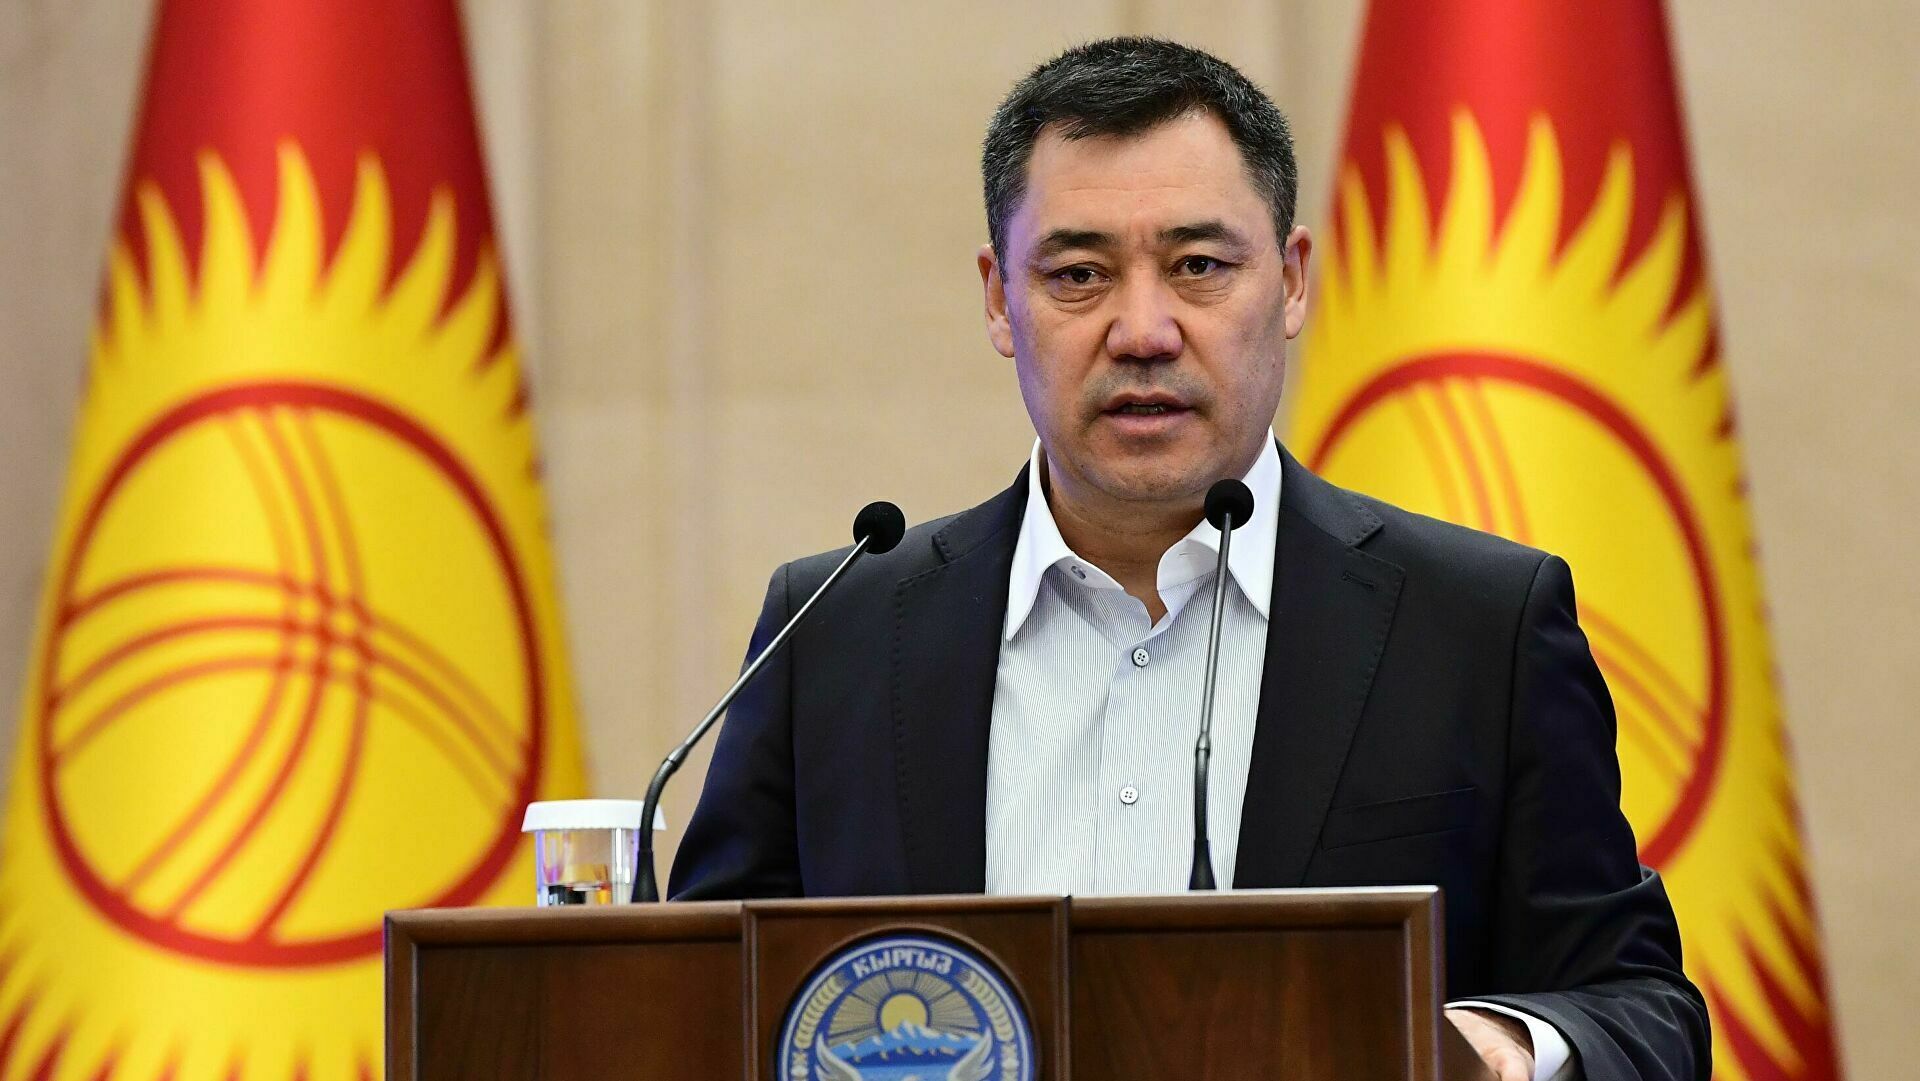 Sadyr Japarov officially took office as the President of Kyrgyzstan